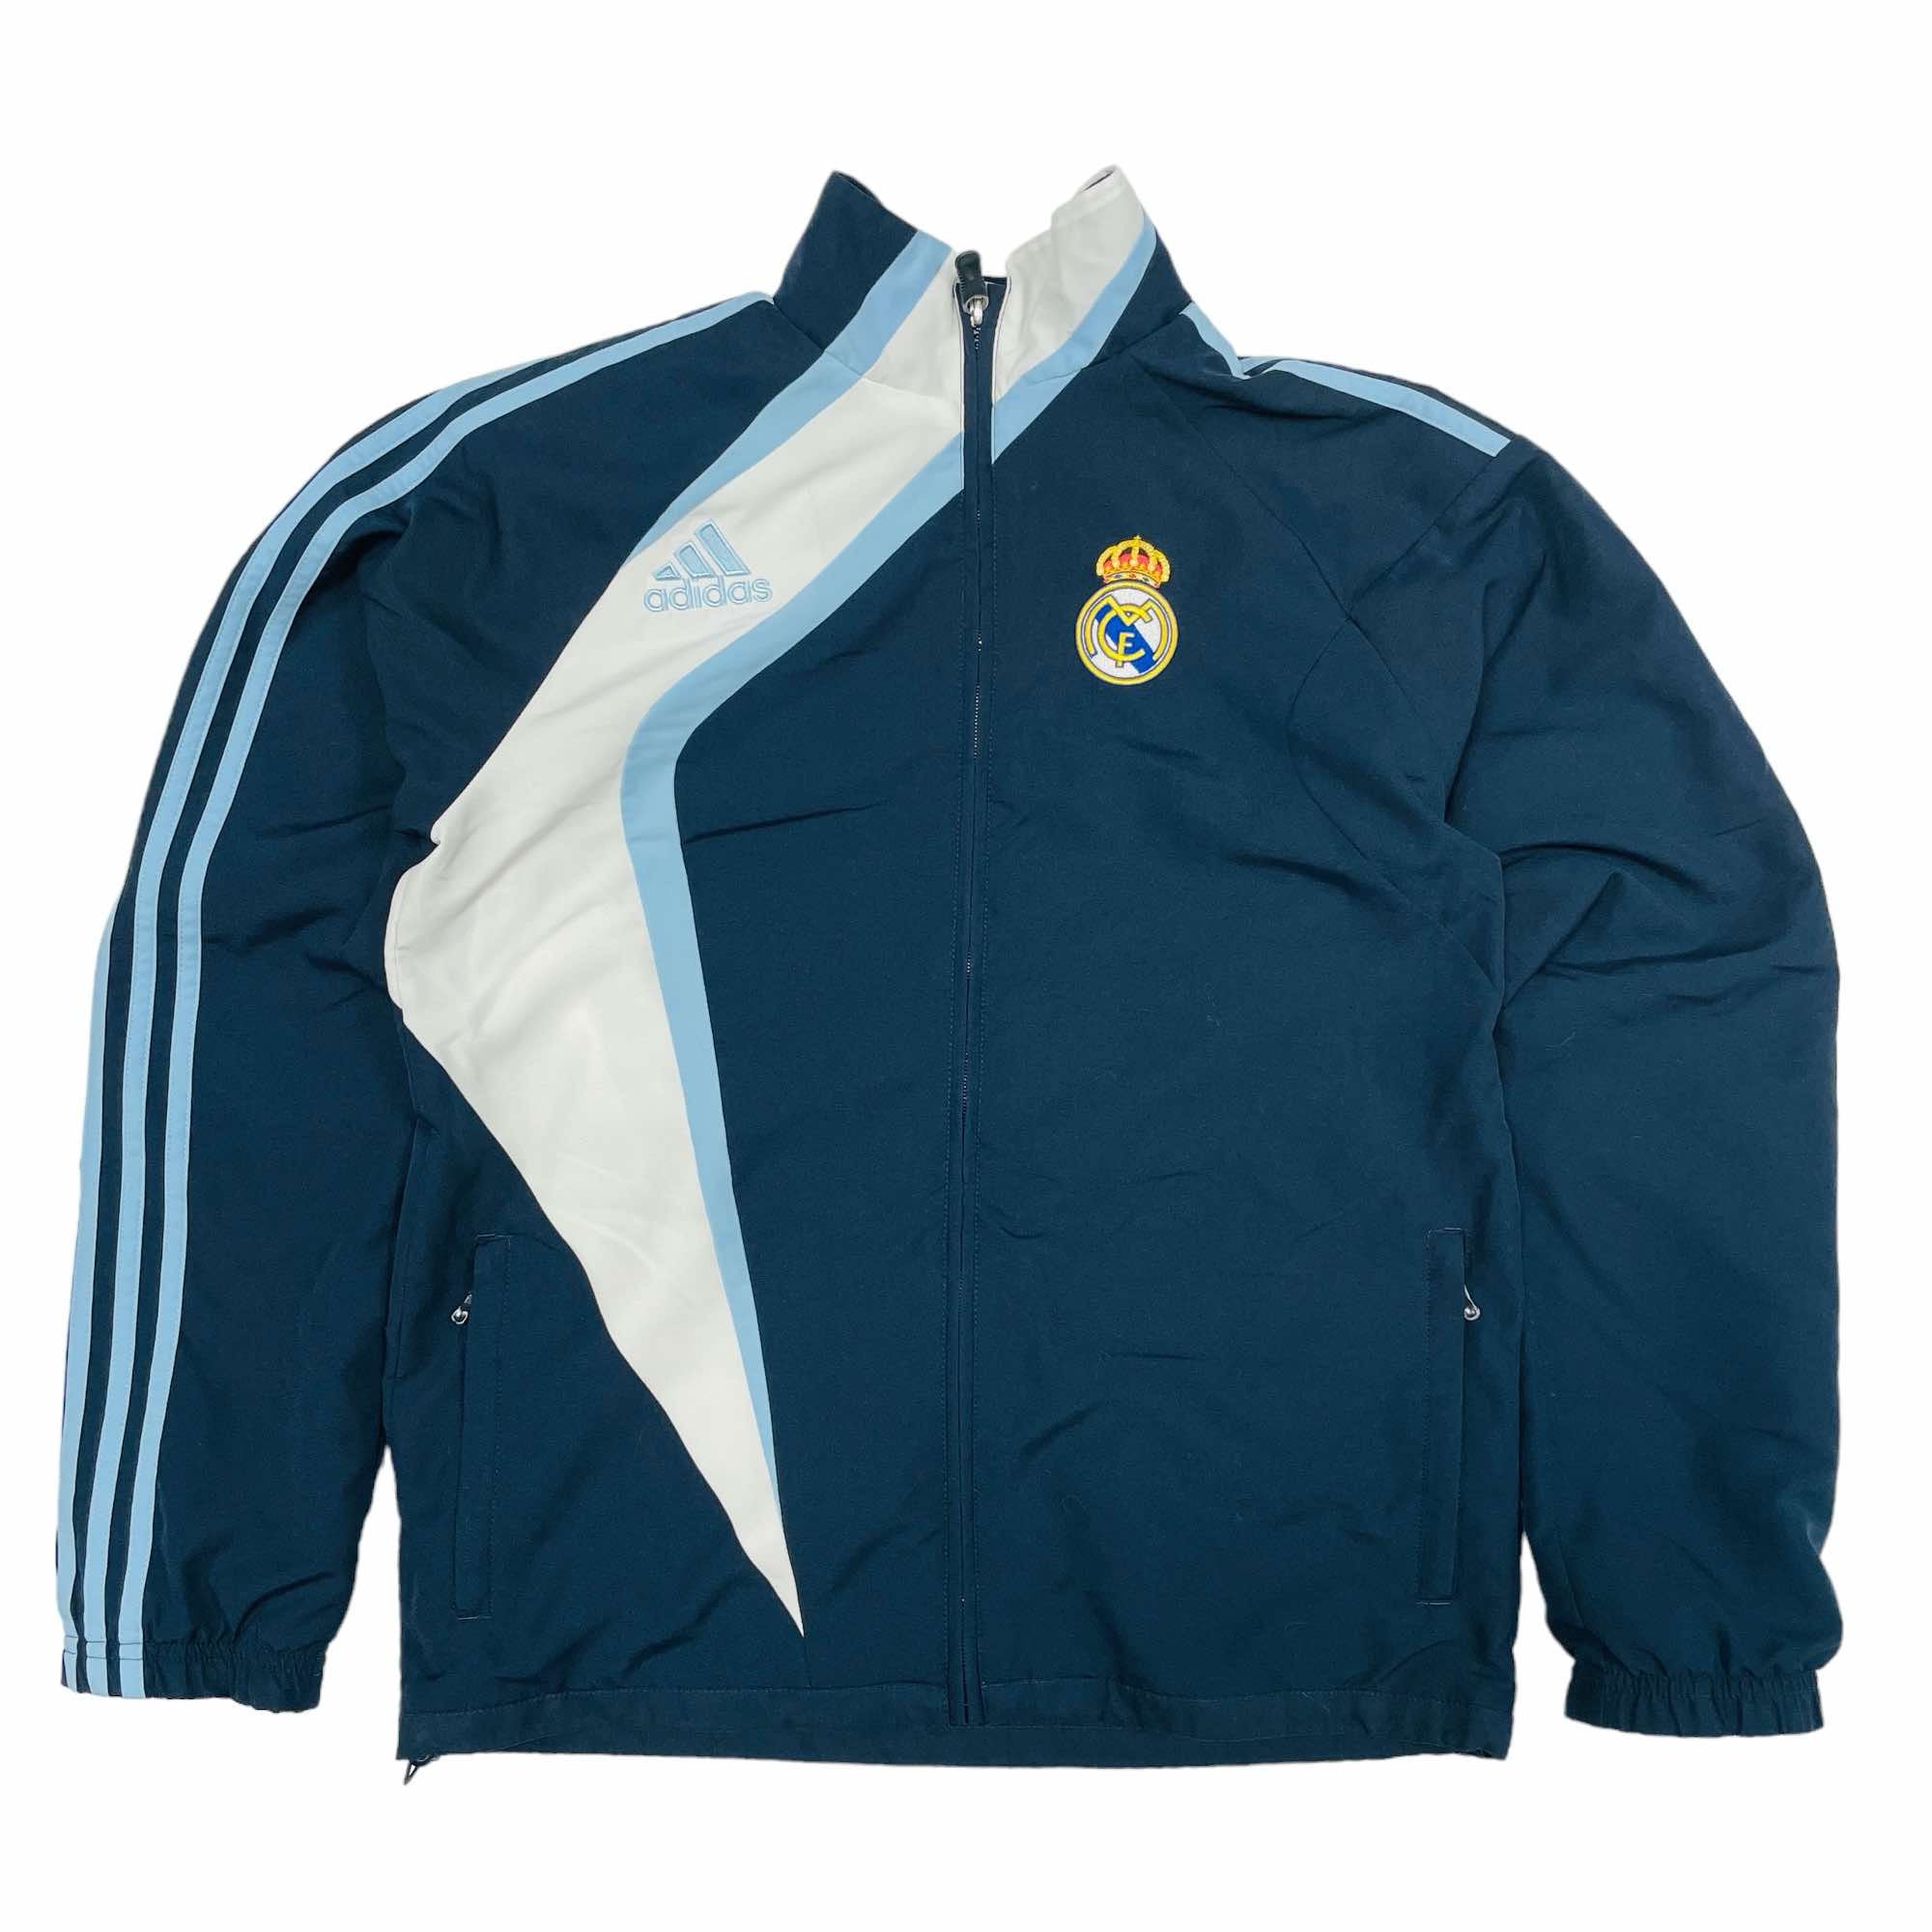 Real Madrid 2009/10 Adidas Training Jacket - Medium